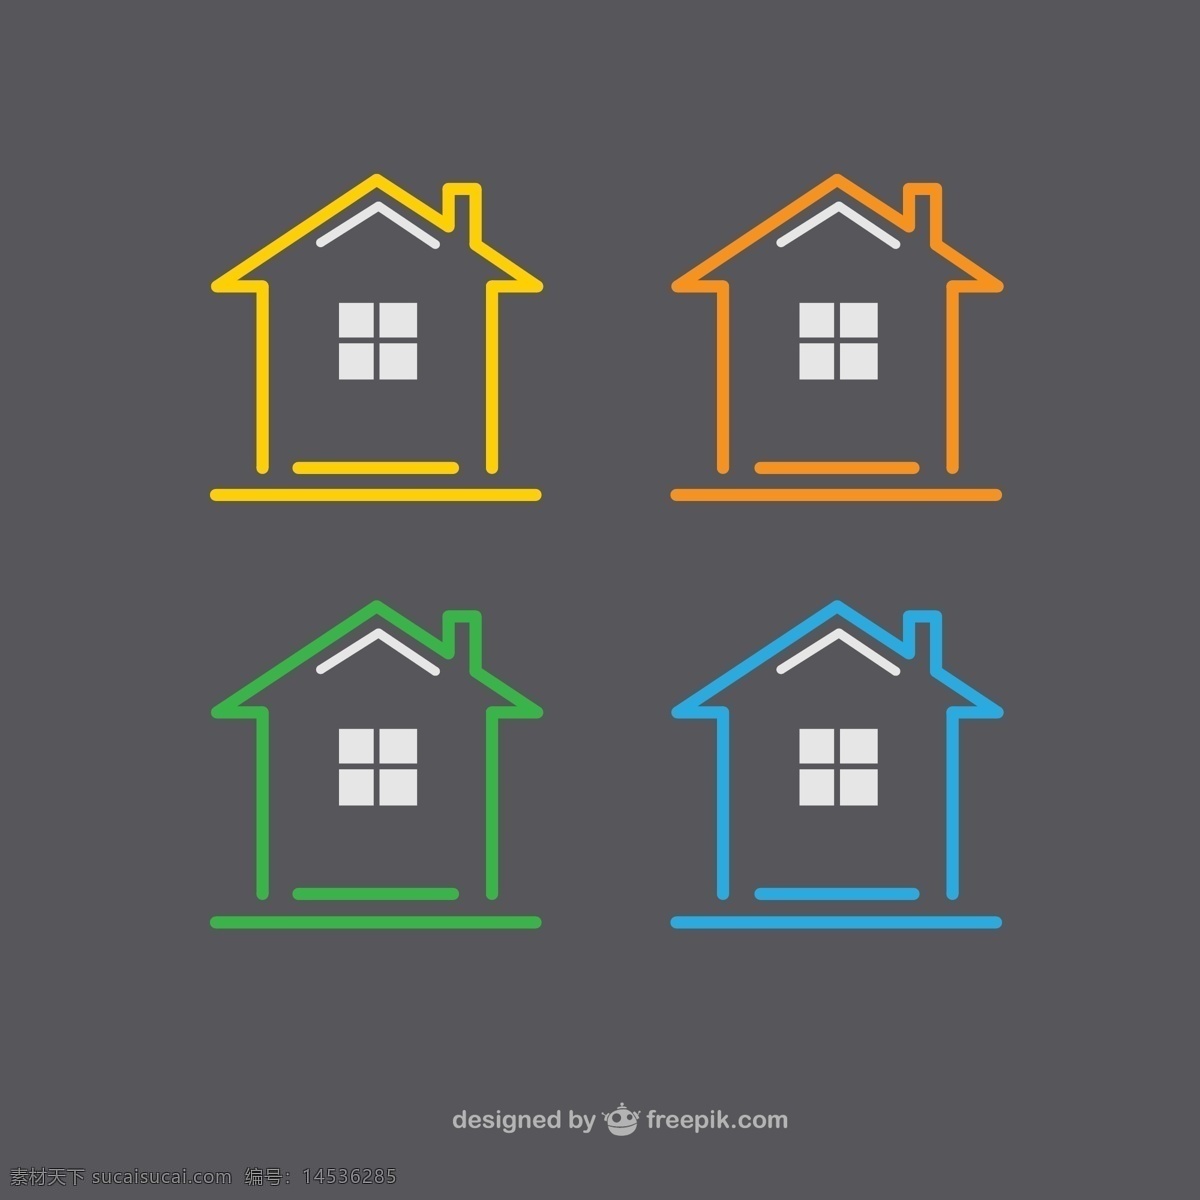 彩色 房屋 标志 建筑 房地产 矢量图 格式 矢量 高清图片